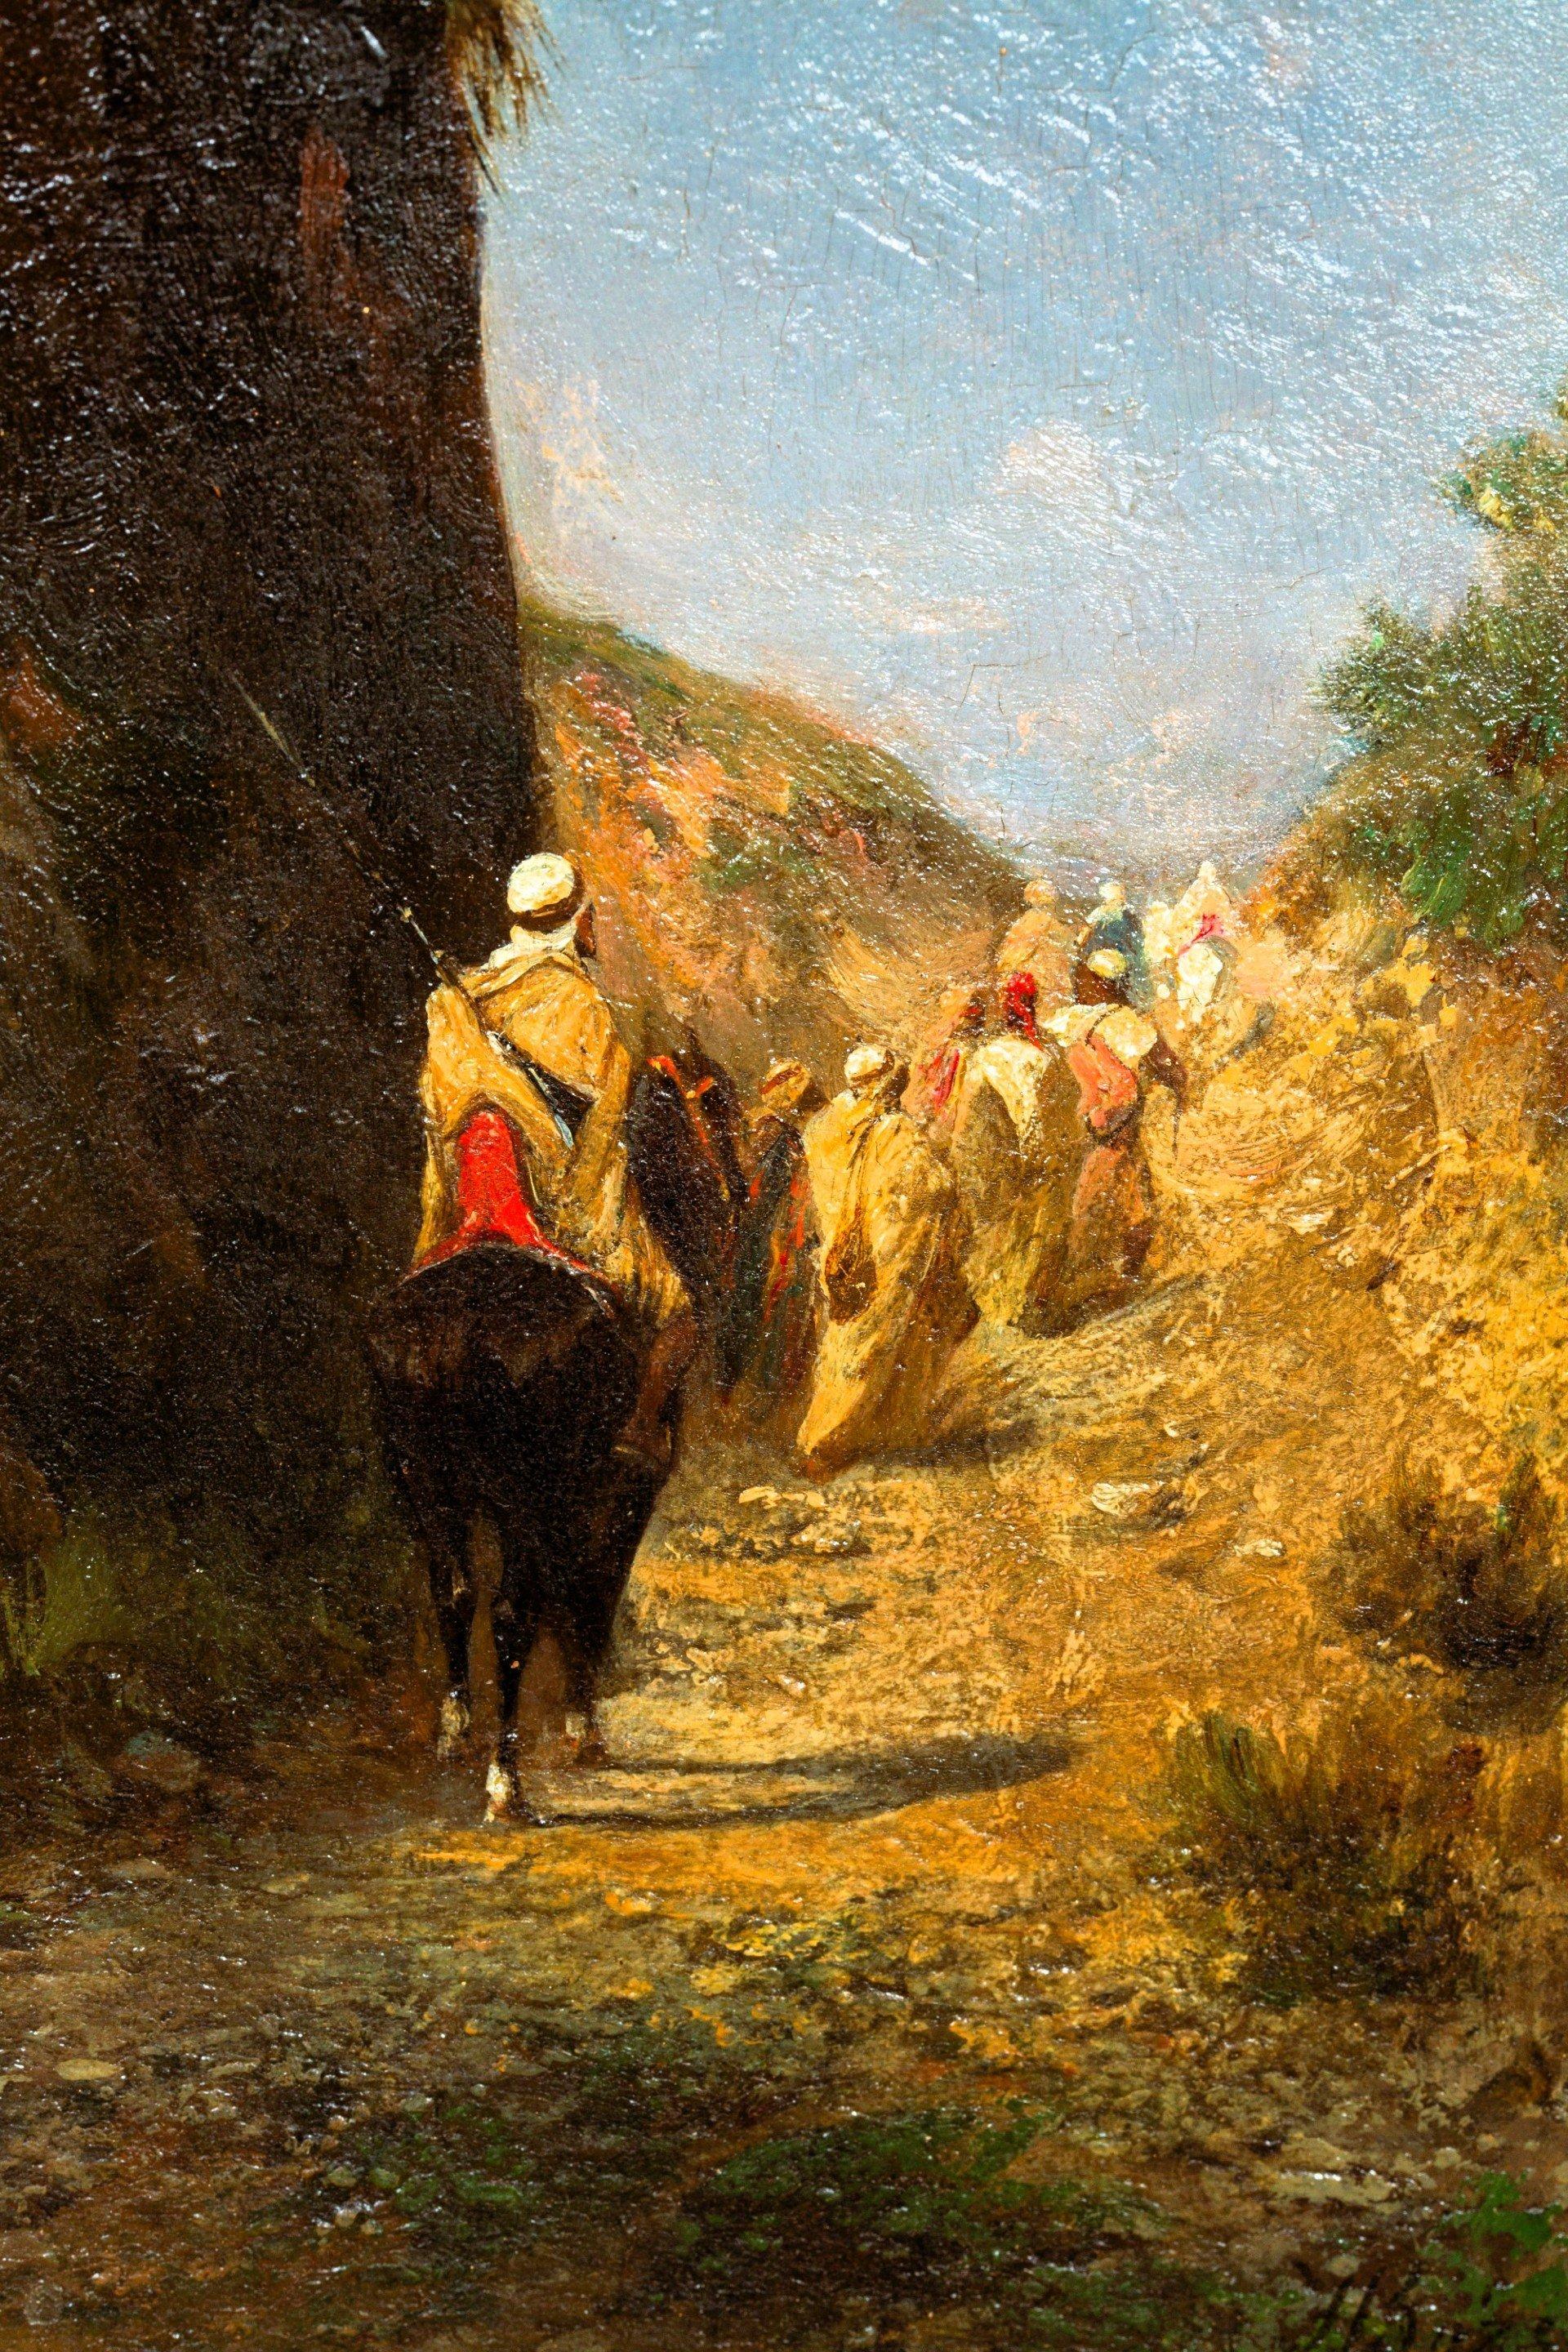 Cavaliers et bédouins marchants sur un chemin près d'une falaise.
(Panneau 32 *20 cm) 
Honoré Boze ist ein französischer Orientalist, der am 19. April 1830 auf der Insel Maurice geboren wurde und am 5. Januar 1909 (im Alter von 78 Jahren) in